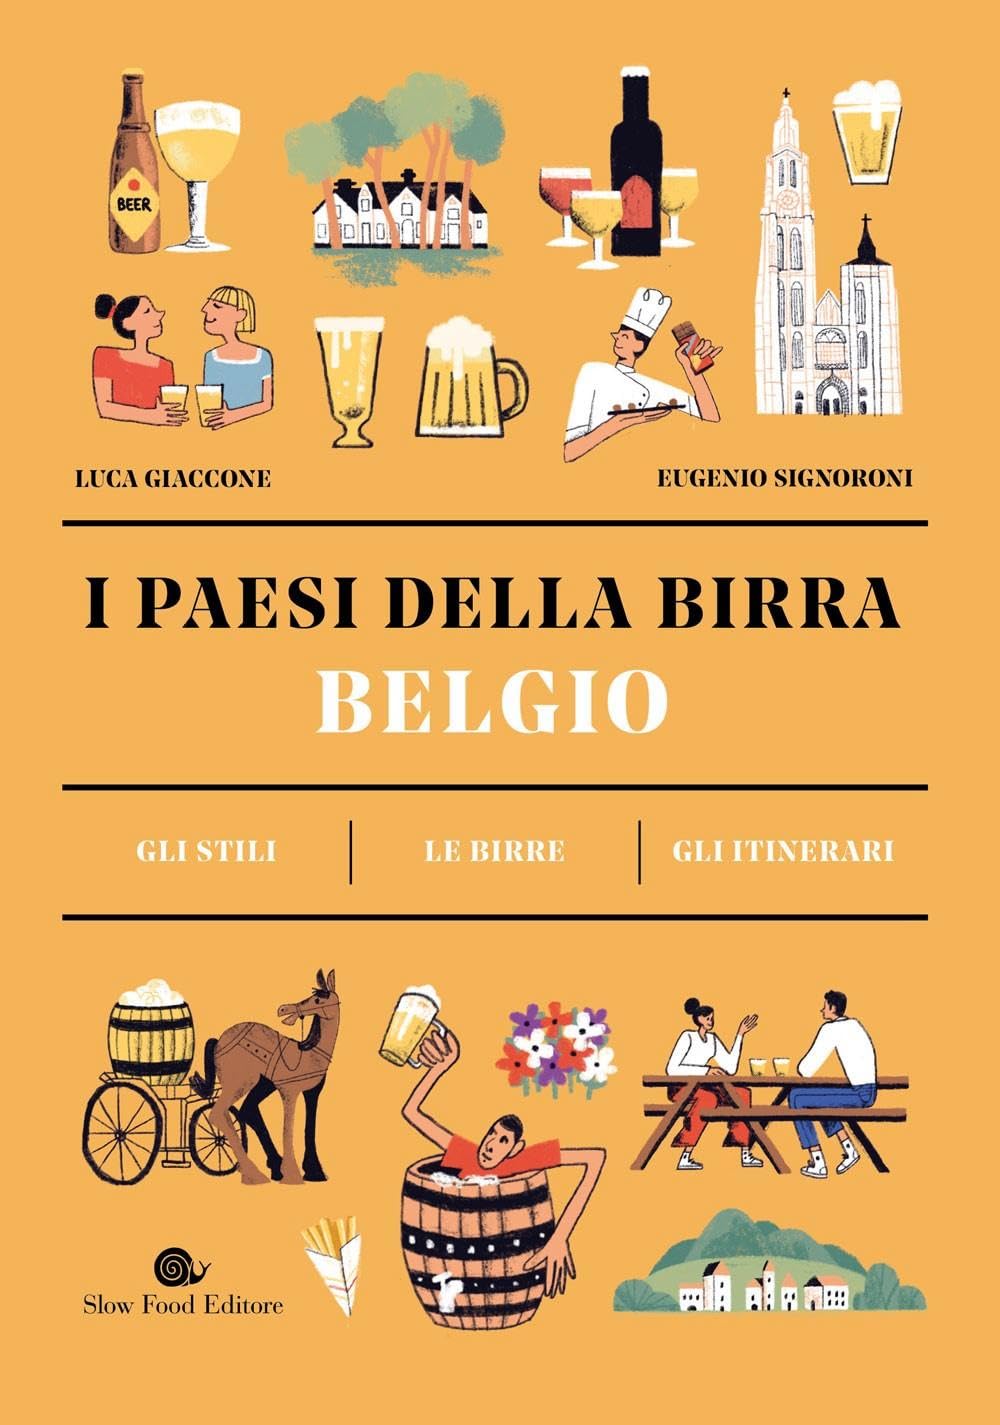 I Paesi Della Birra – Belgio di Slow Food – Recensione